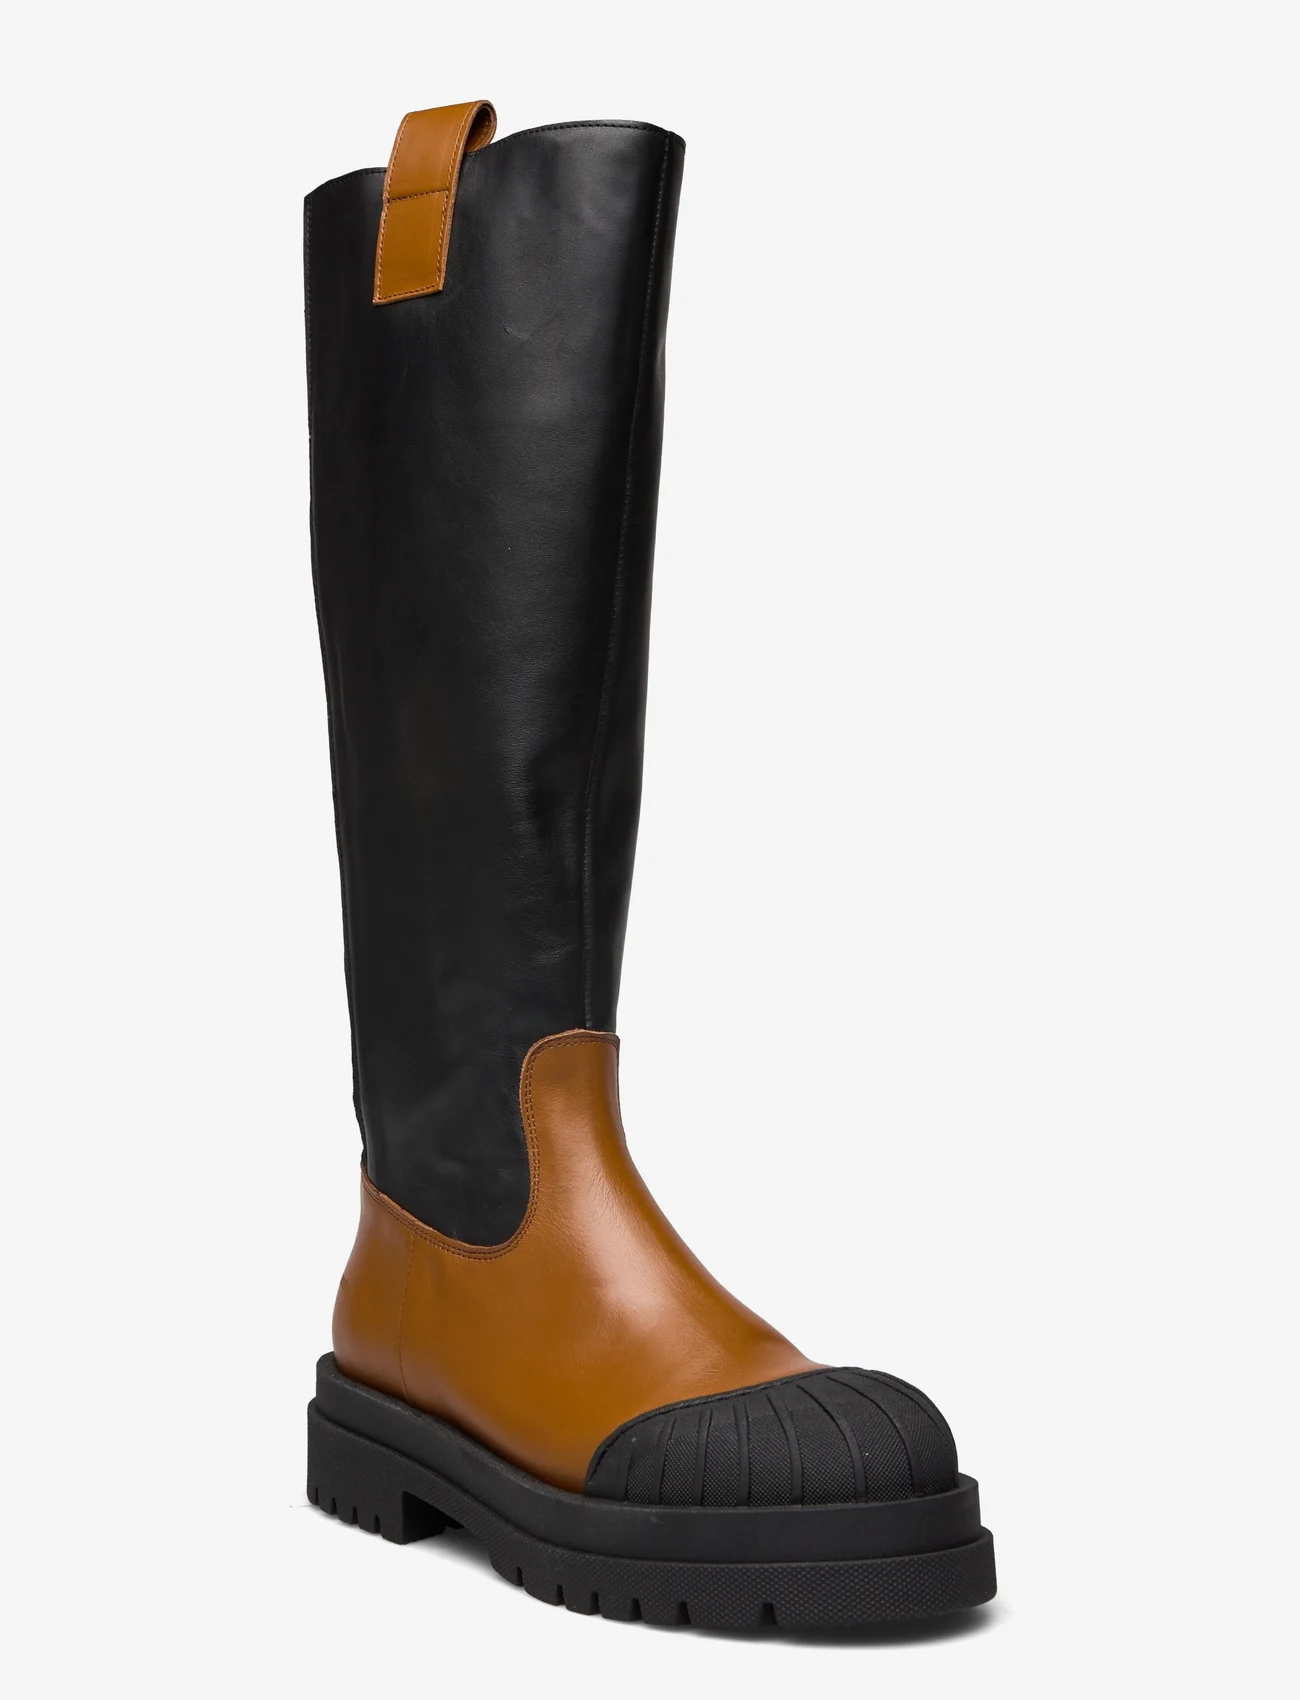 ANGULUS - Boots - flat - langskaftede støvler - 1850/1604/019 camel/black/blac - 1